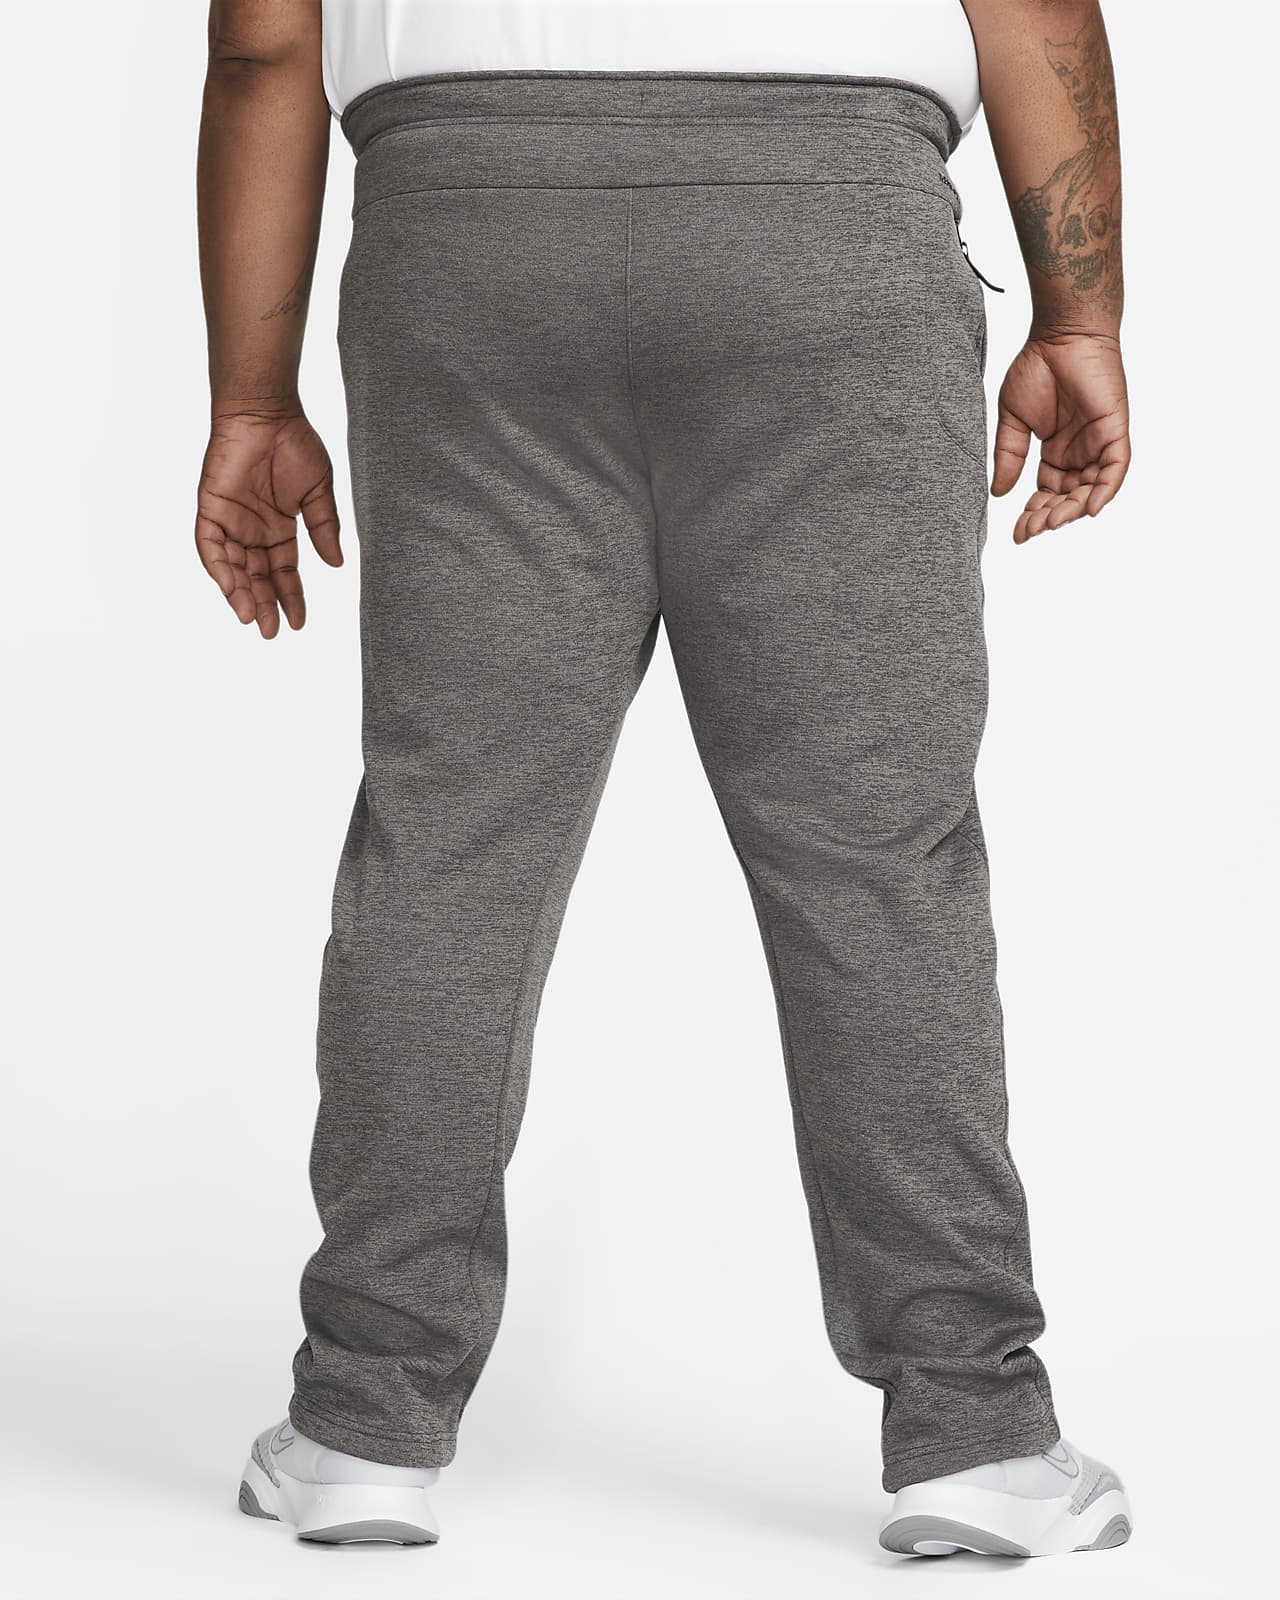 Nike Therma-FIT Men's Winterized Fleece Training Pants